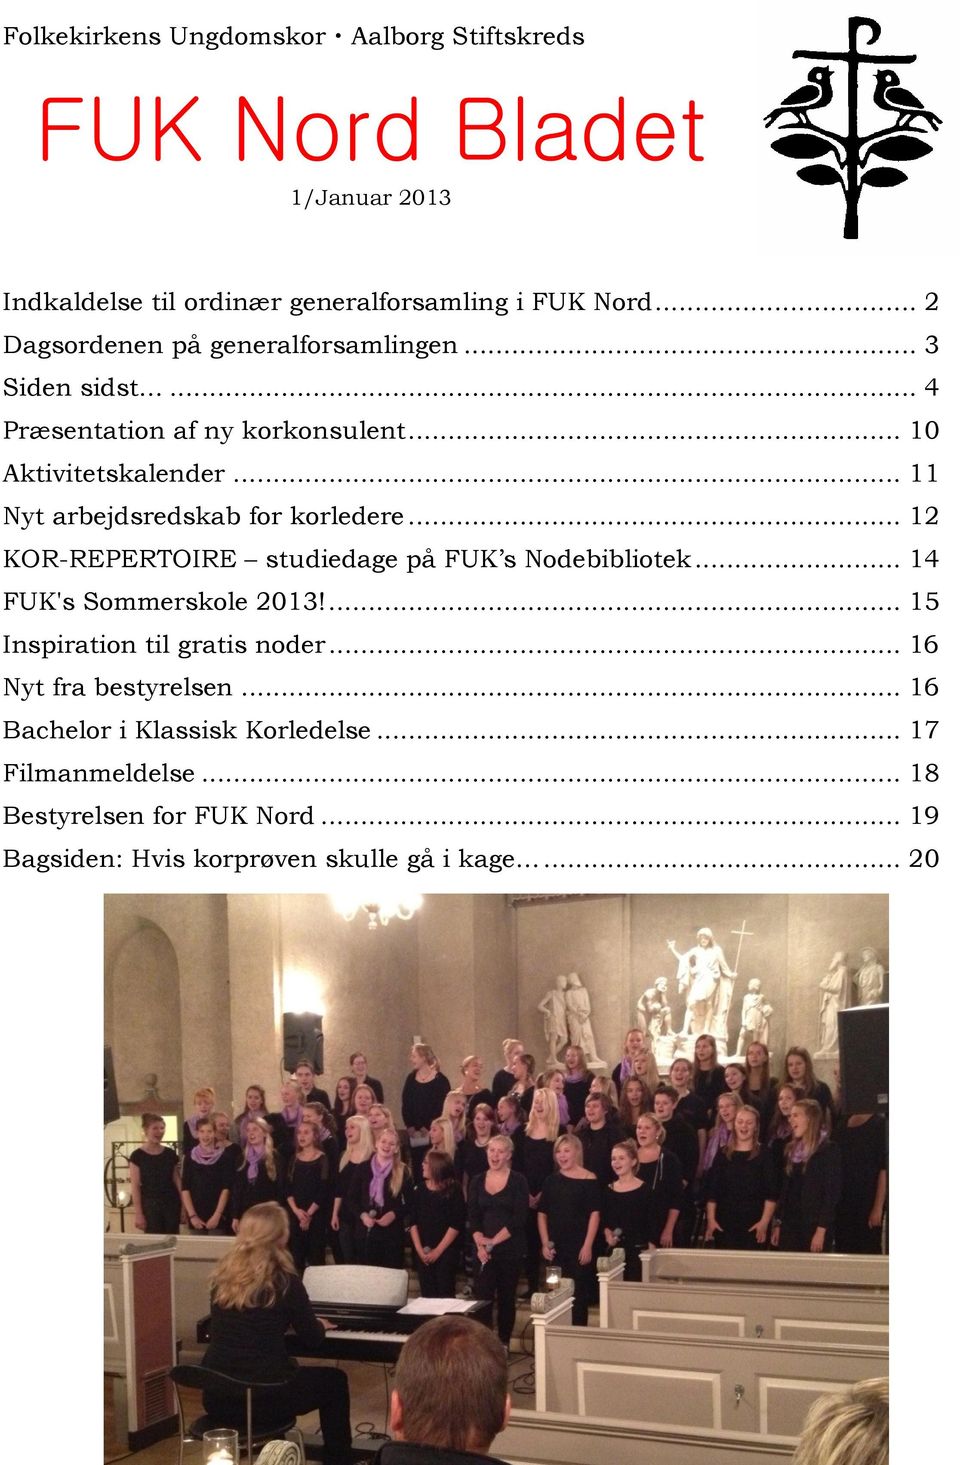 .. 11 Nyt arbejdsredskab for korledere... 12 KOR-REPERTOIRE studiedage på FUK s Nodebibliotek... 14 FUK's Sommerskole 2013!